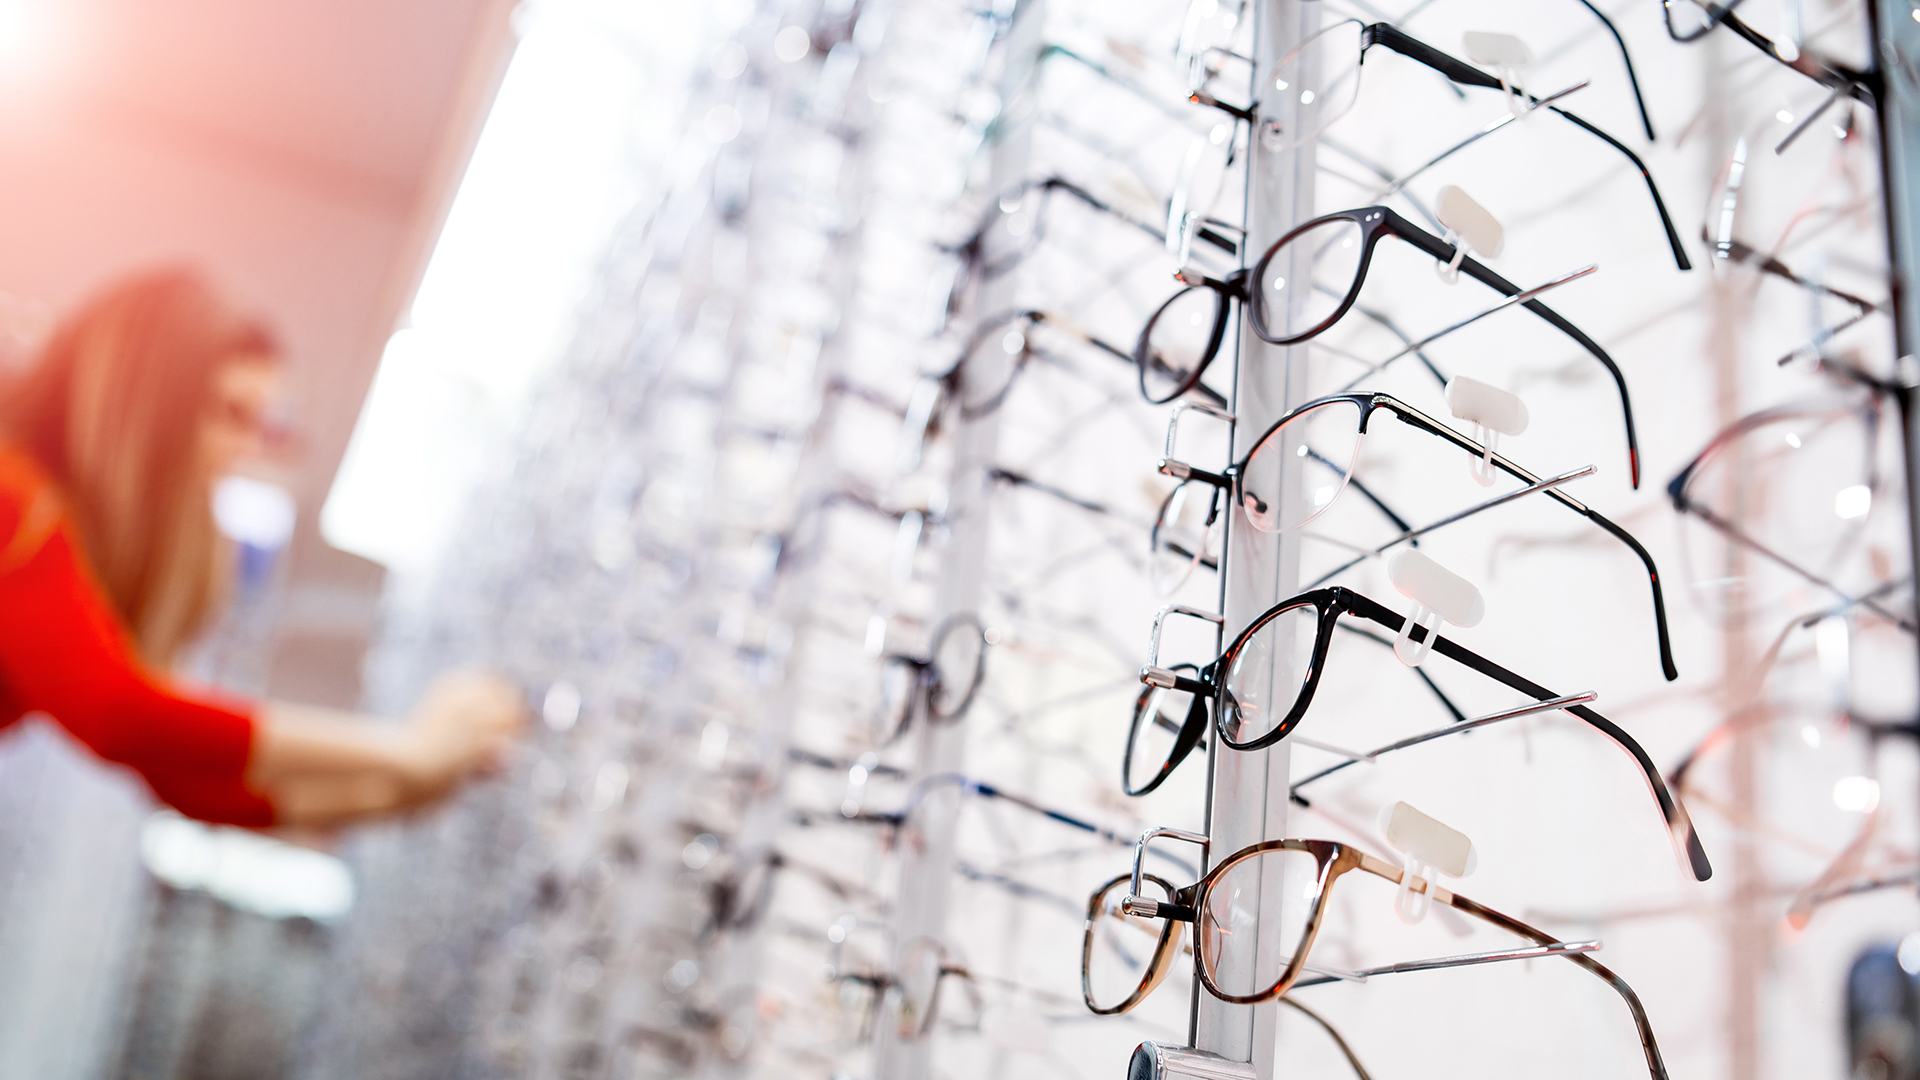 Brillen auf Brillenständer in Augenoptikfachgeschäft / Augenoptikbetrieb